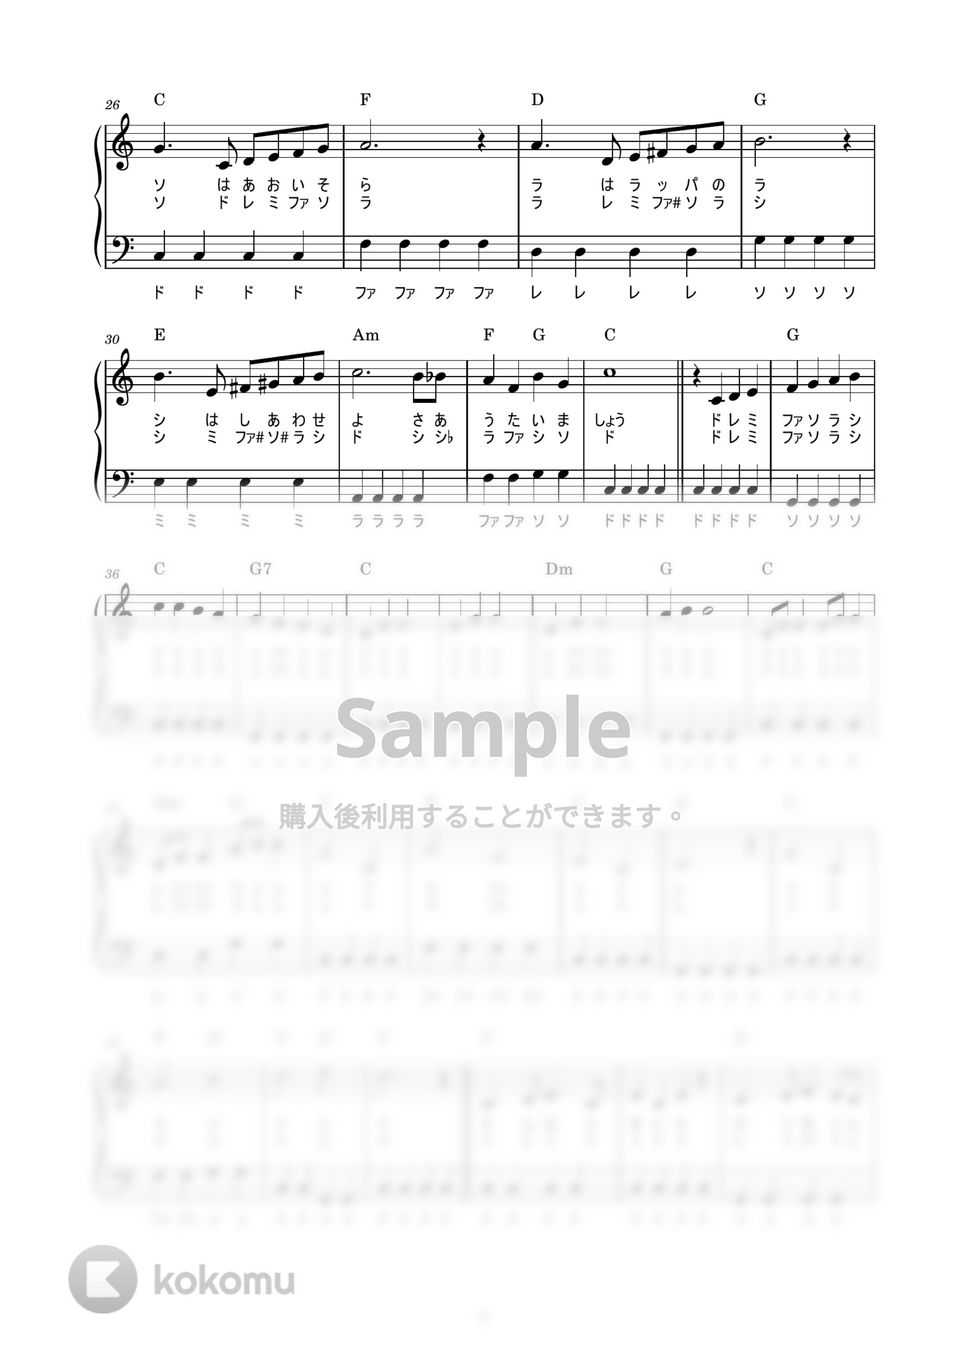 ペギー葉山 - ドレミの歌 (かんたん / 歌詞付き / ドレミ付き / 初心者) by piano.tokyo